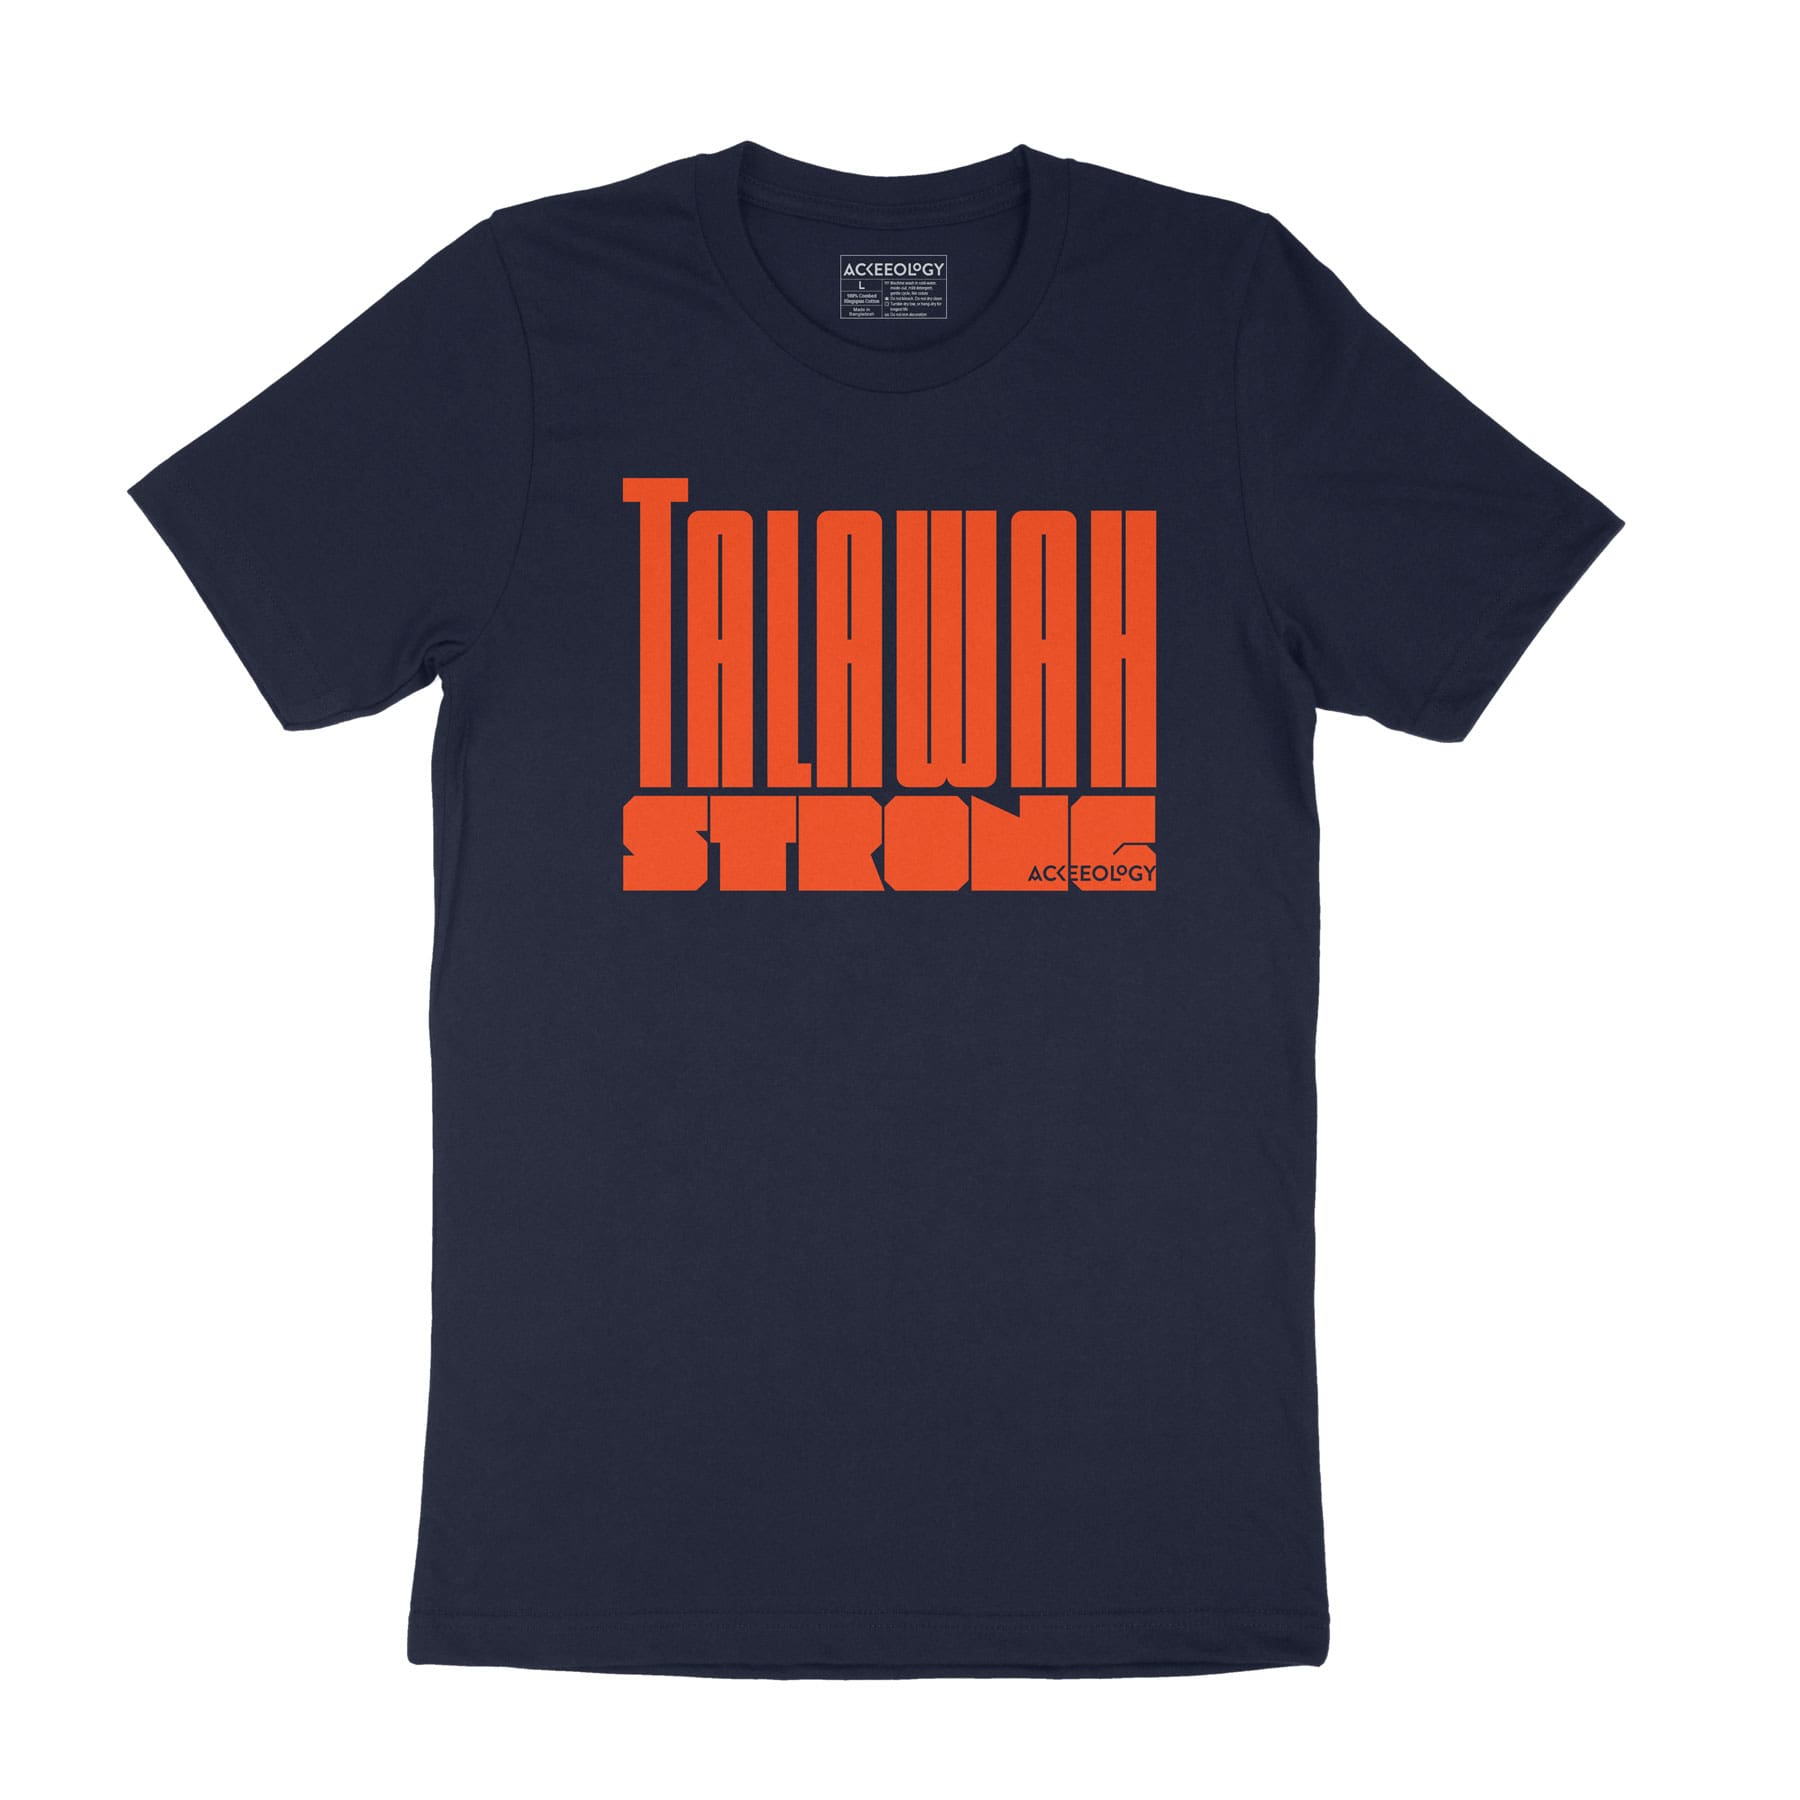 Talawah Strong t-shirt - navy